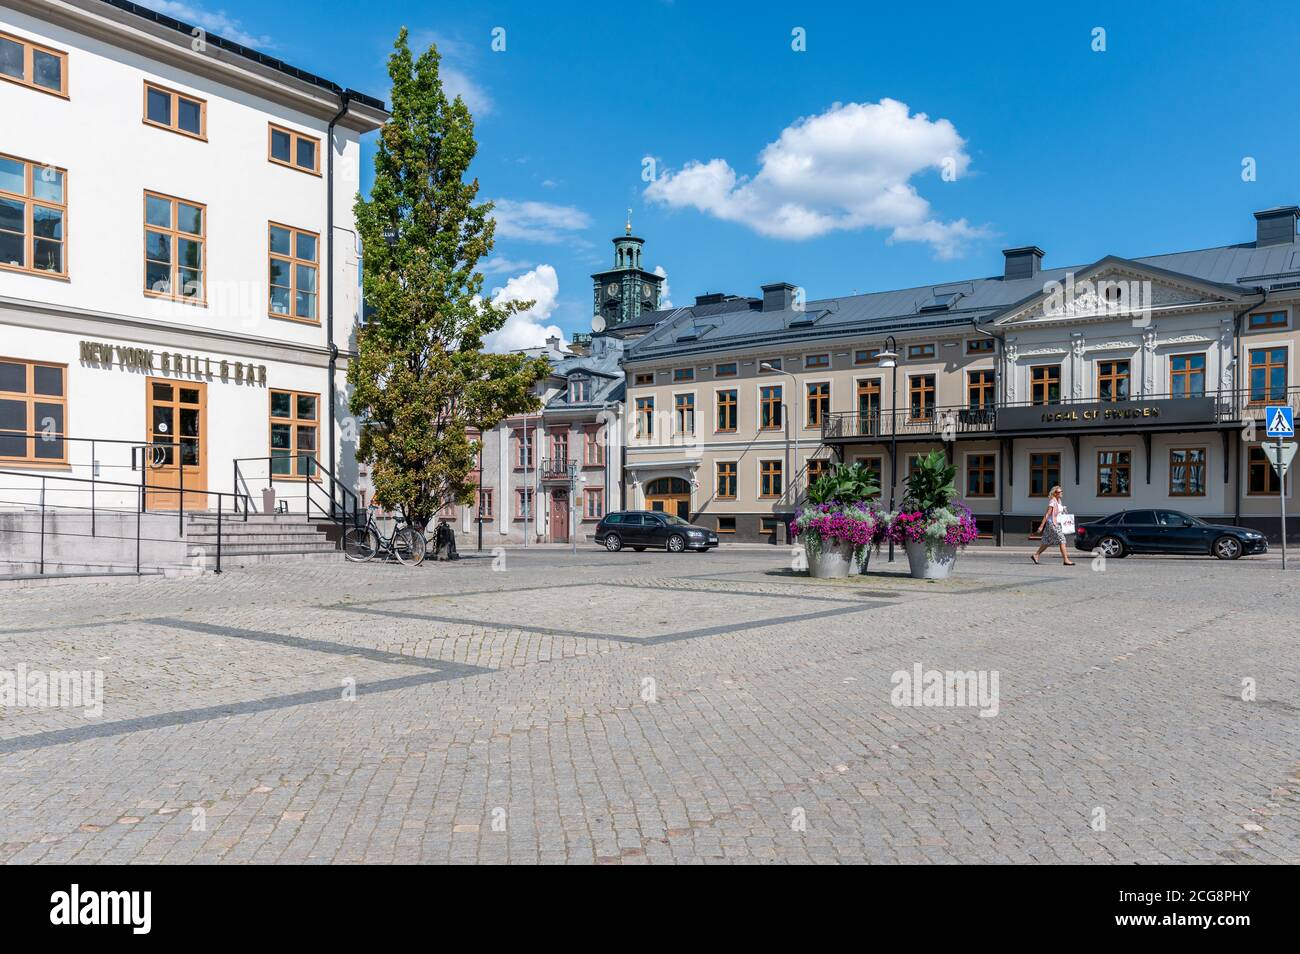 Anciens bâtiments de la place Old Square à Norrkoping. Norrkoping est une ville industrielle historique de Suède. Banque D'Images